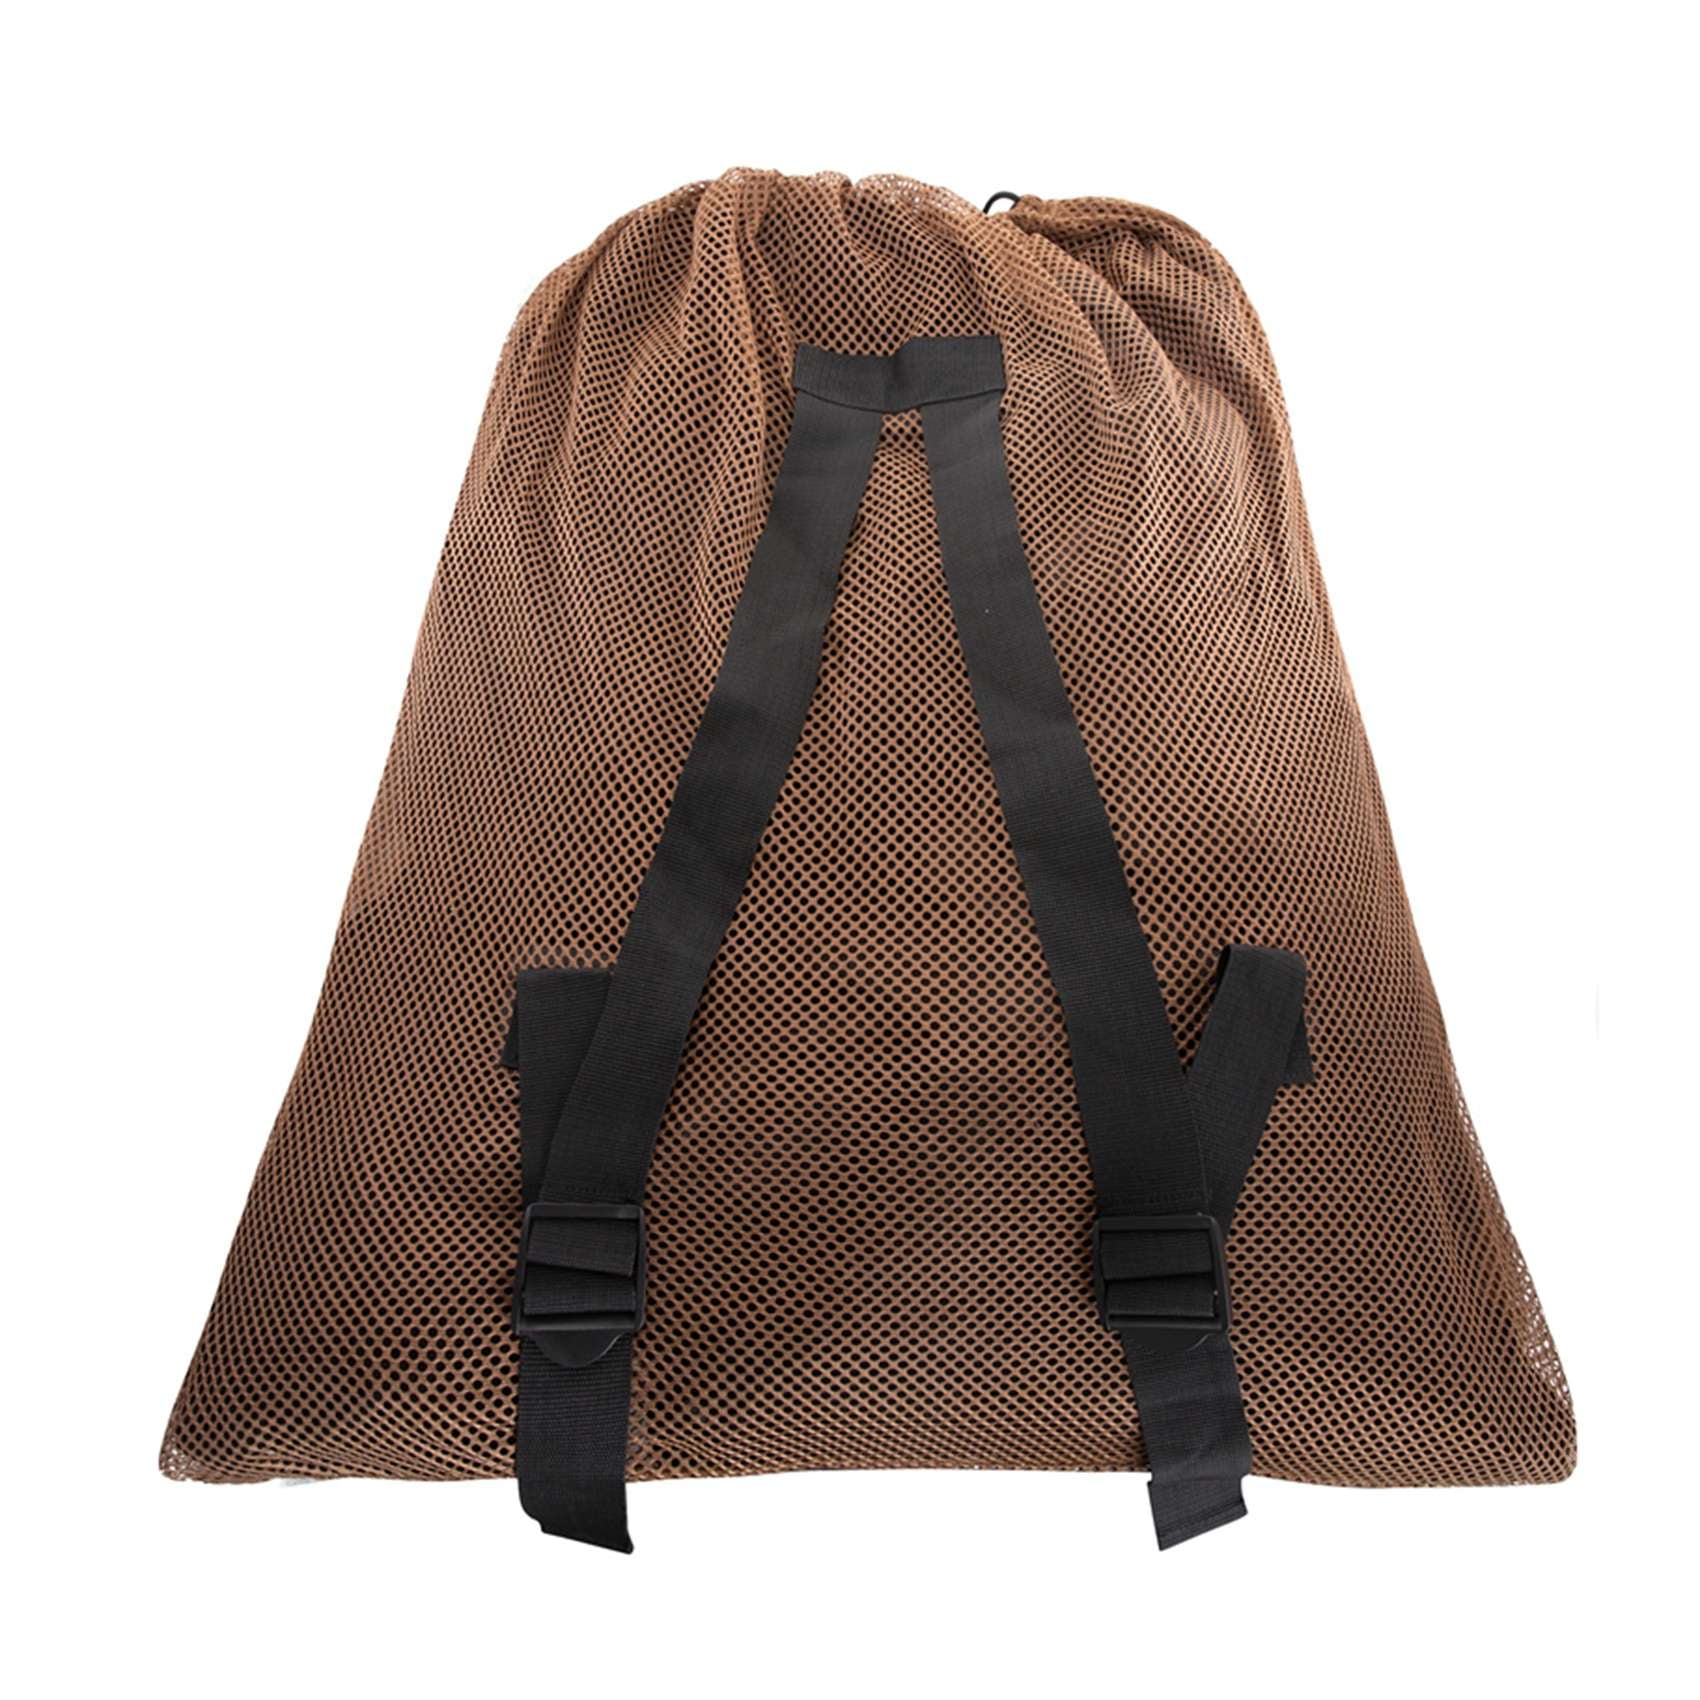 Marsh Gold 33" Hunting Decoy Mesh Bag With Adjustable Shoulder Straps 